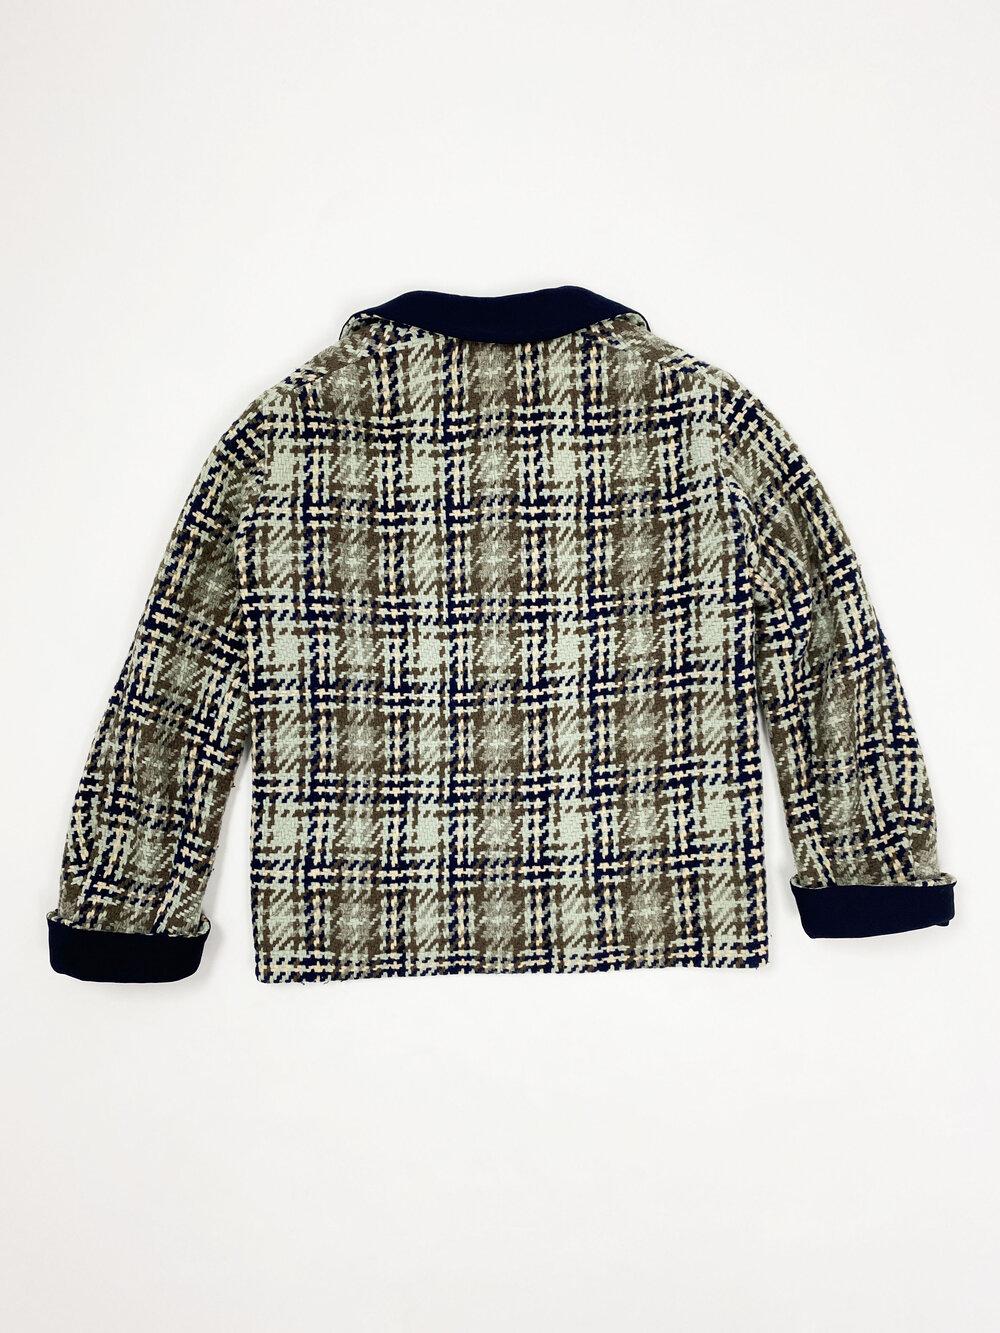 Chanel 60s tweed skirt suit — JAMES VELORIA